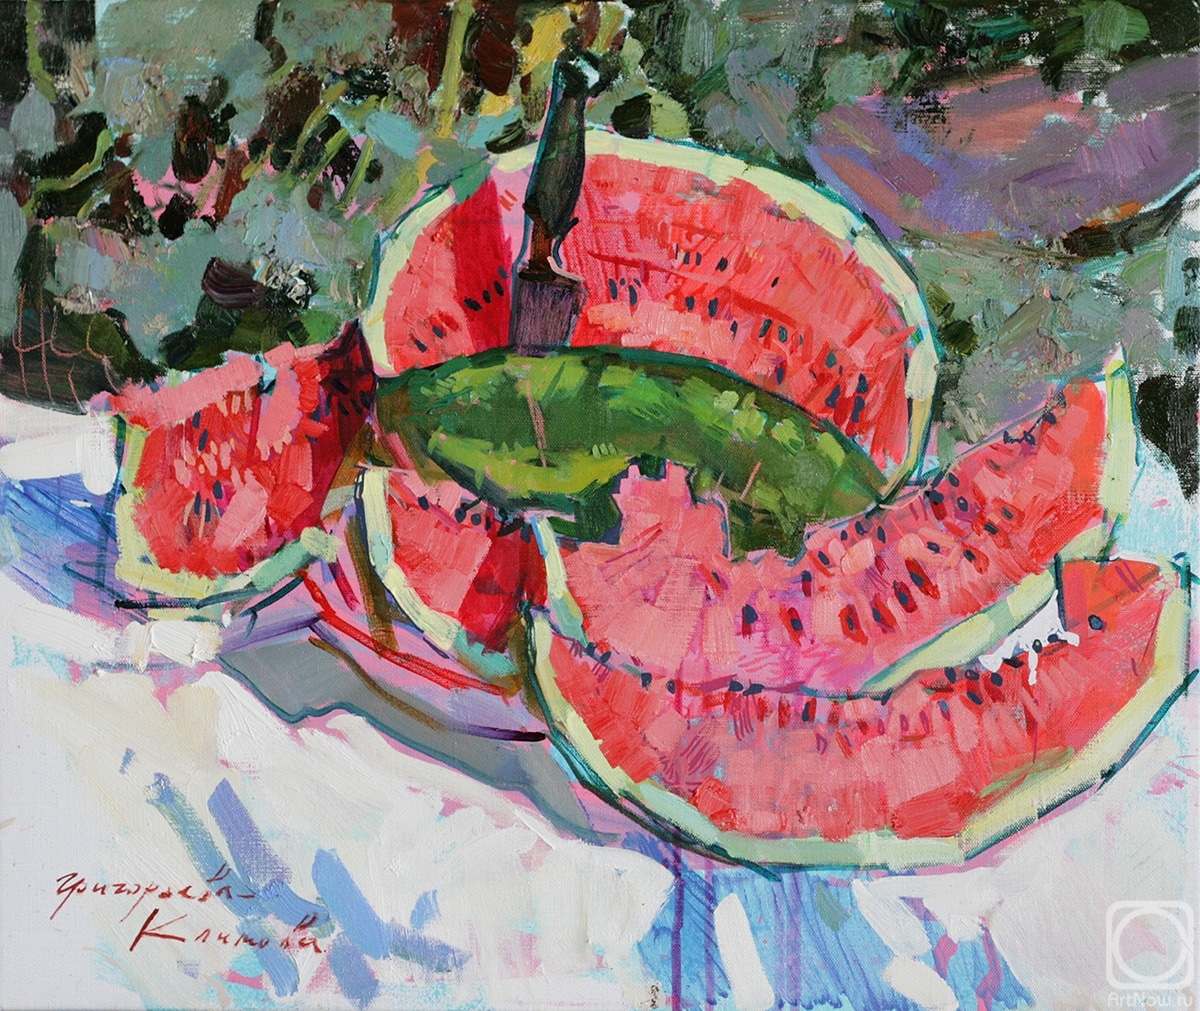 Grigorieva-Klimova Olga. Watermelon in the sun